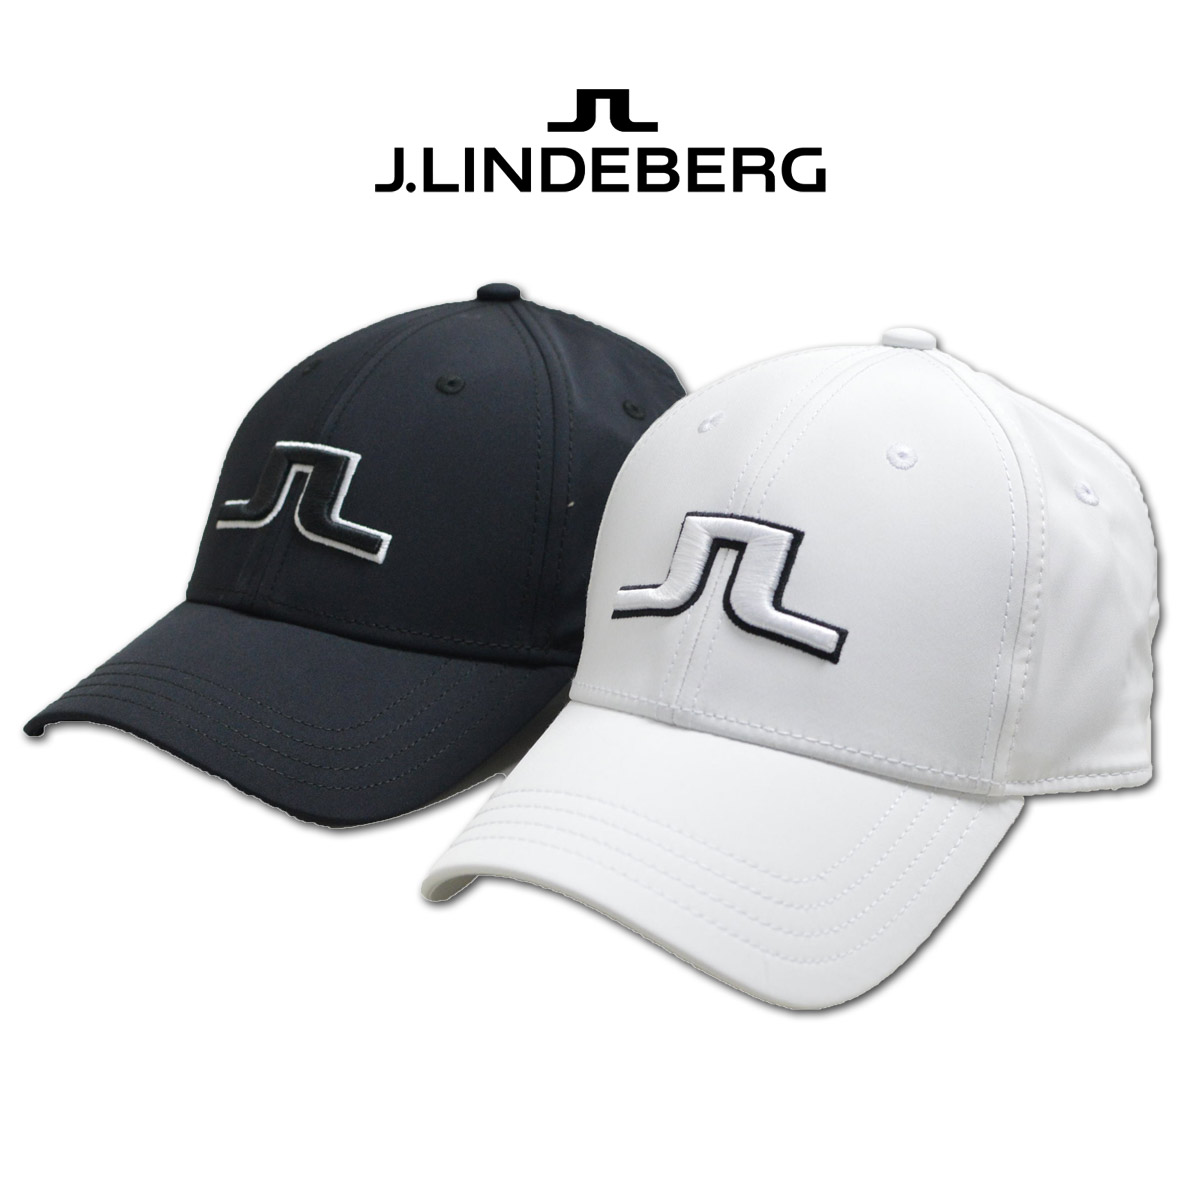 J.リンドバーグ クーリングキャップ キャップ帽子 メンズ ゴルフウェア